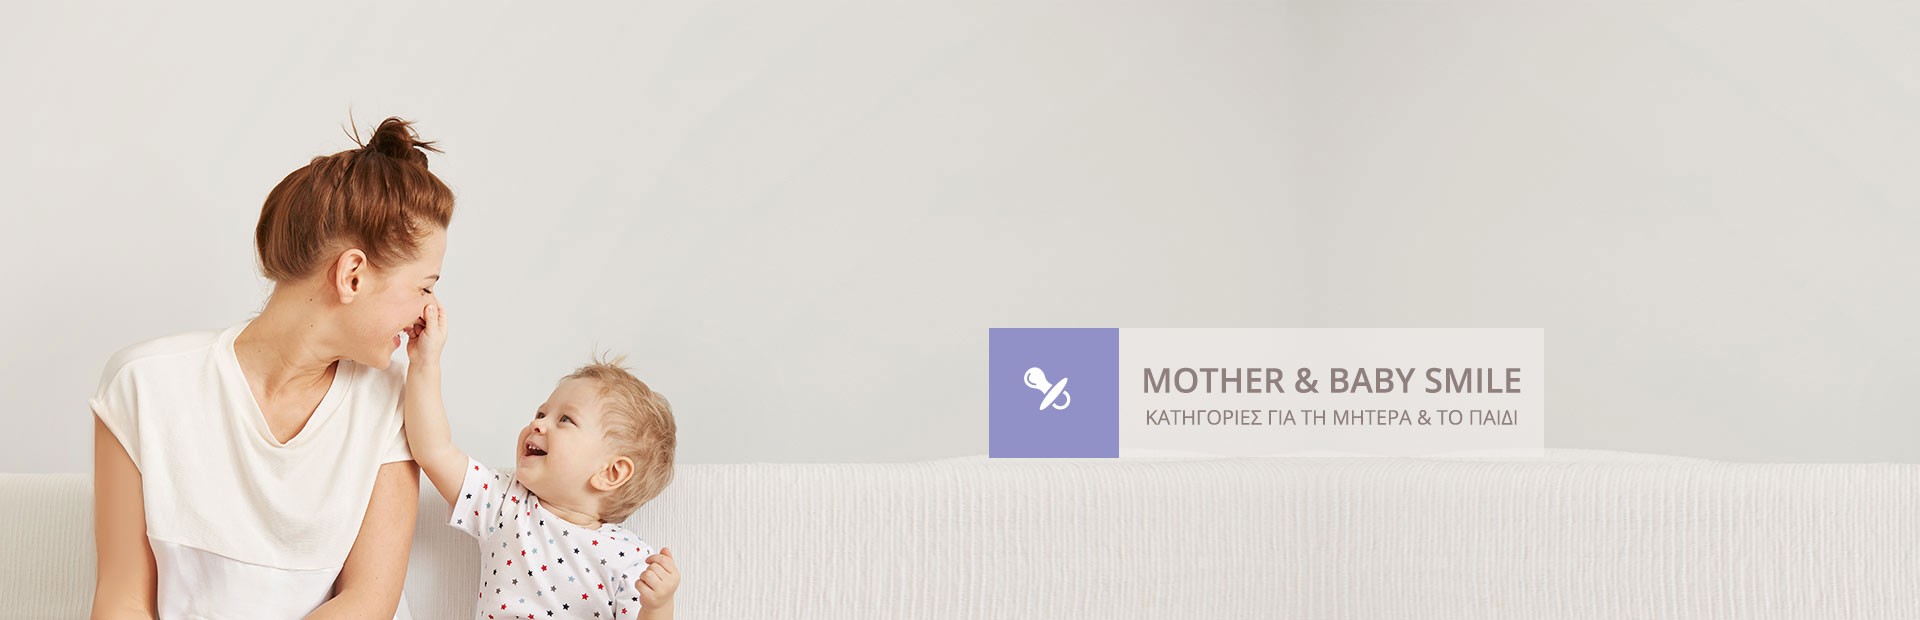 Μαμά & παιδί | Smile-pharmacy.gr